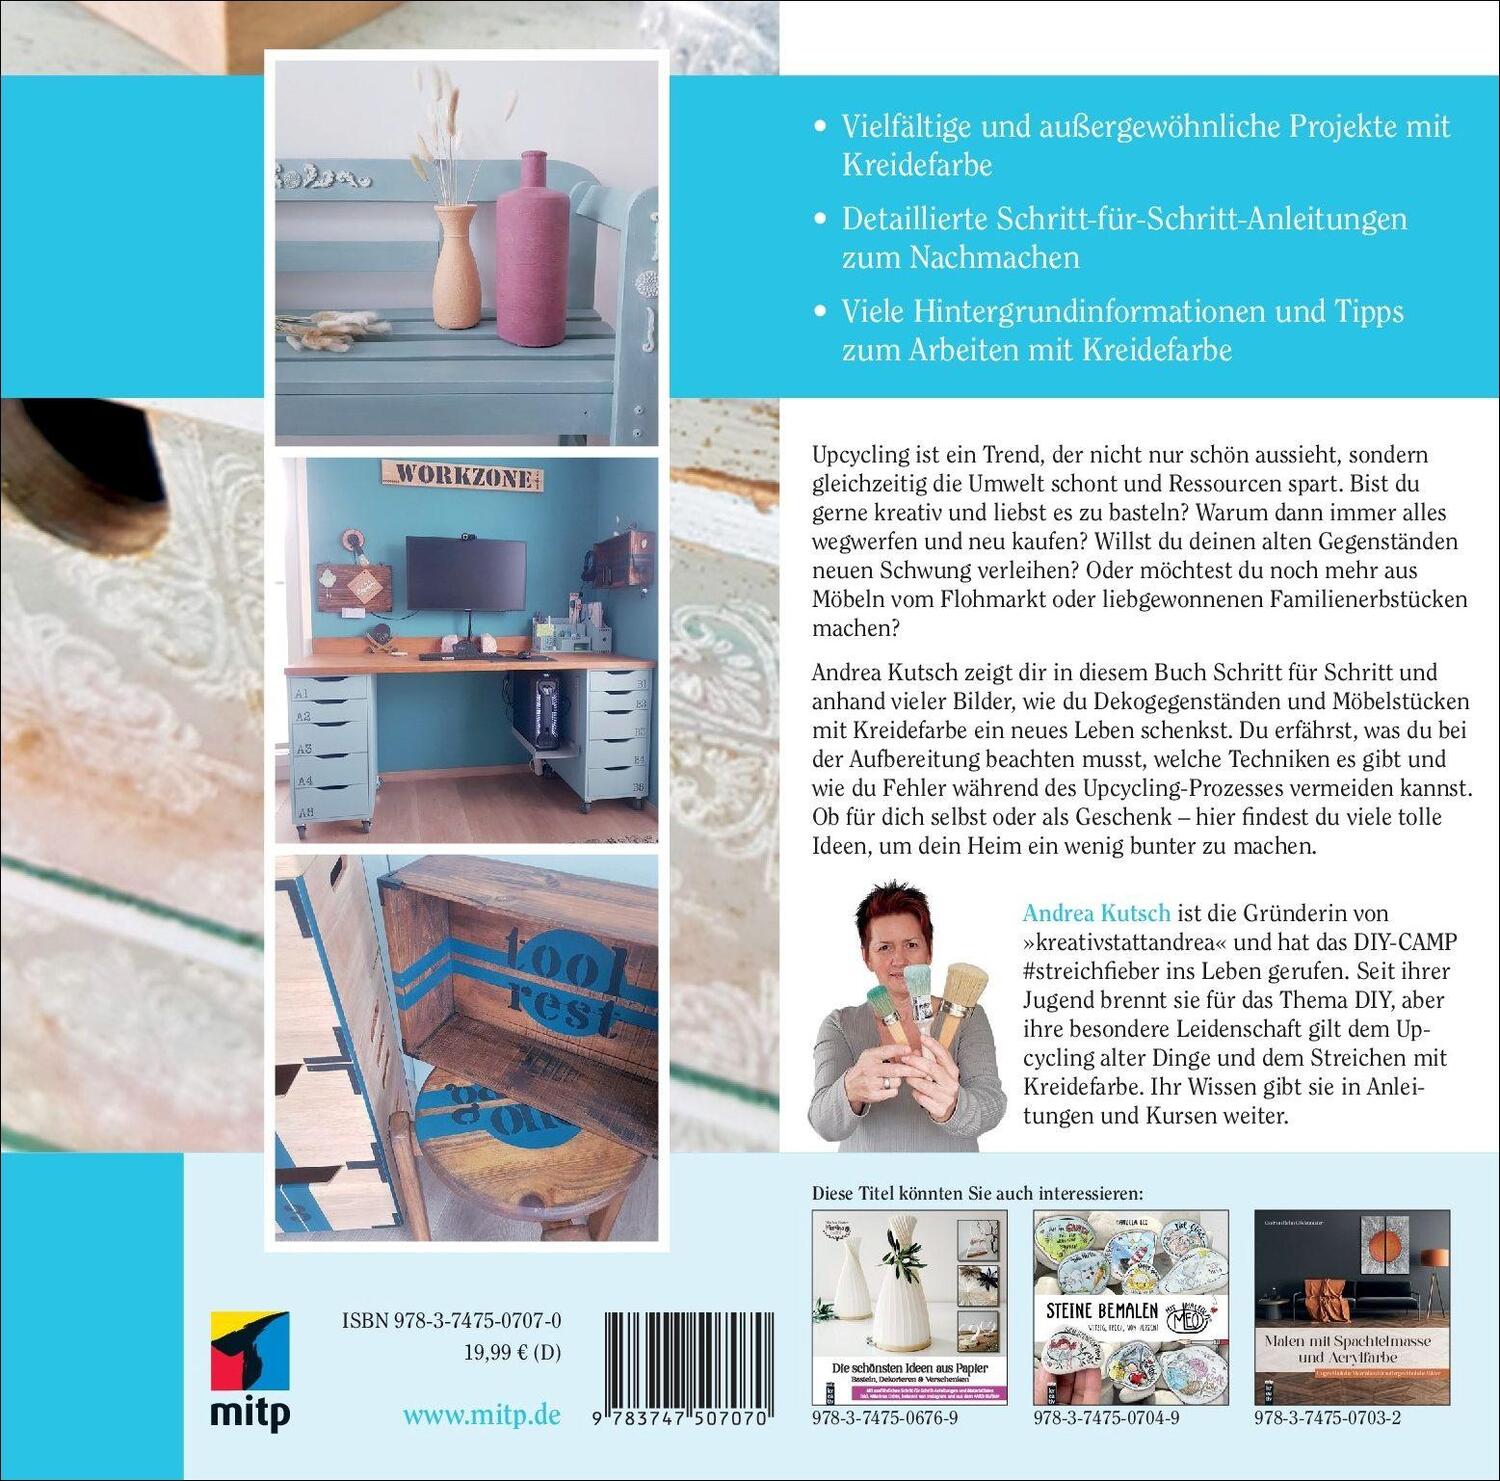 Rückseite: 9783747507070 | Die schönsten Upcycling-Ideen mit Kreidefarbe | Andrea Kutsch | Buch